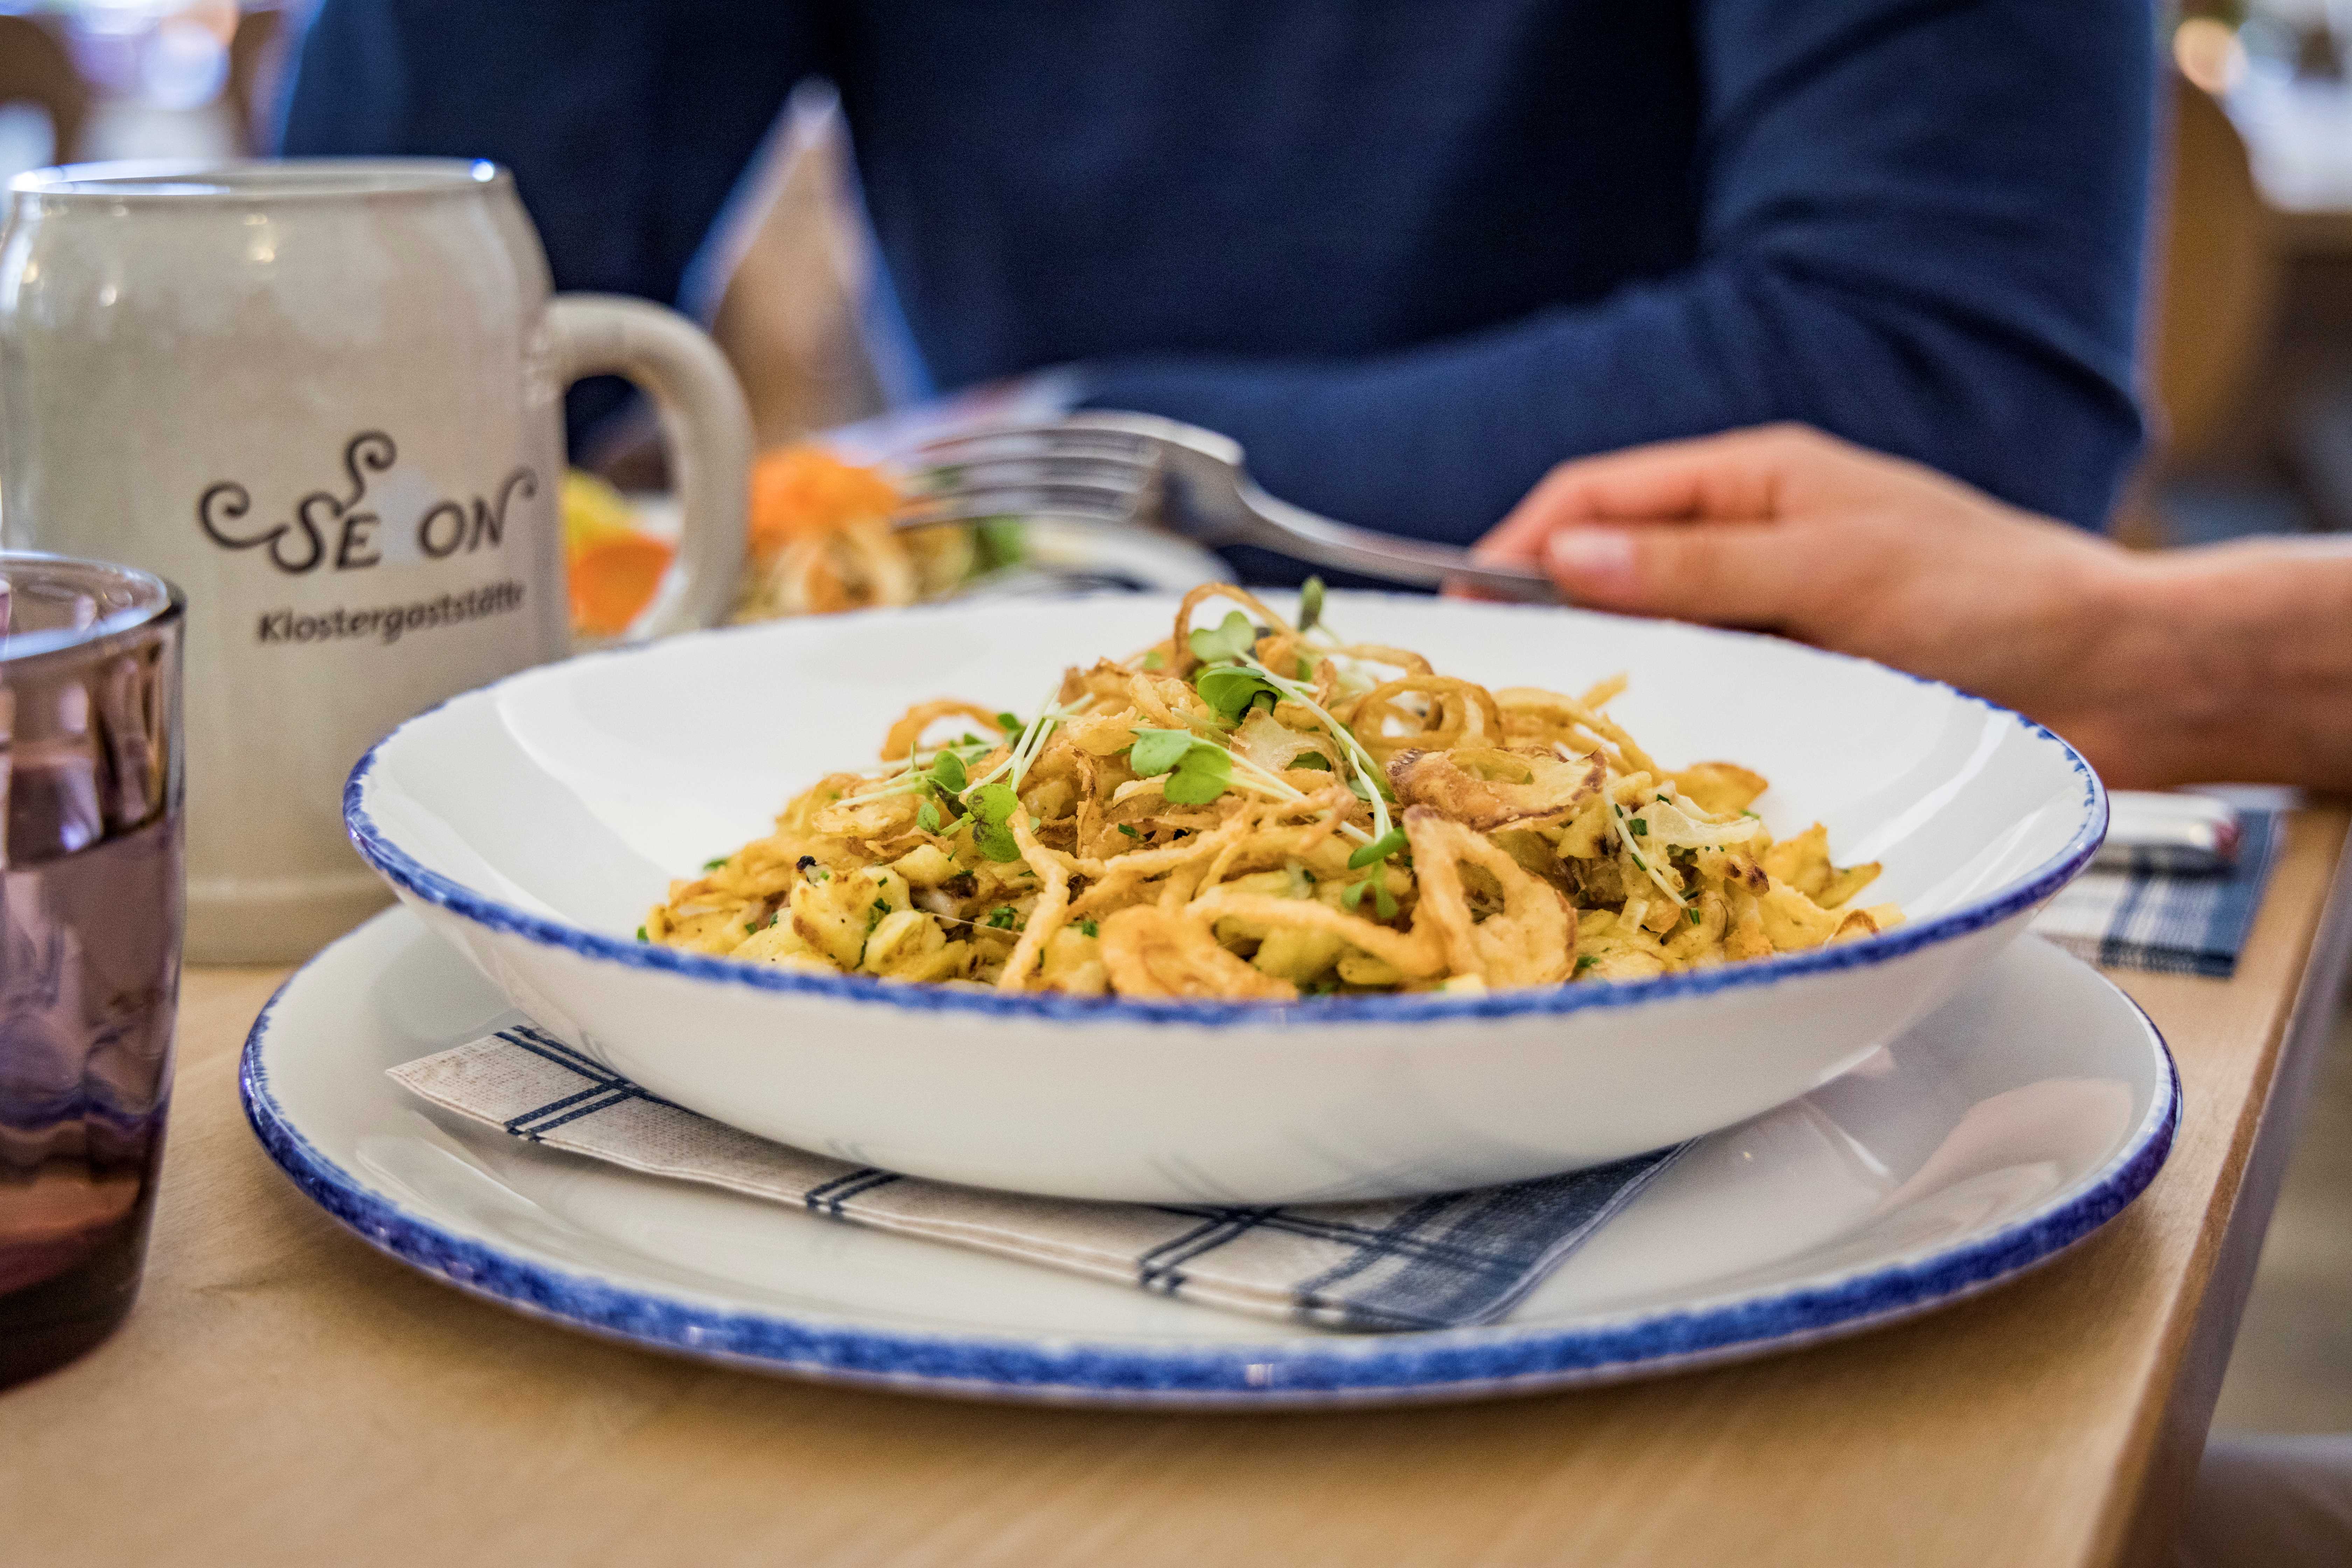 ein deftiges Gericht, angerichtet auf einem blau weißen Teller, daneben ein Kloster-Seeon-Bierkrug auf einem Holztisch in der Klostergaststätte Seeon